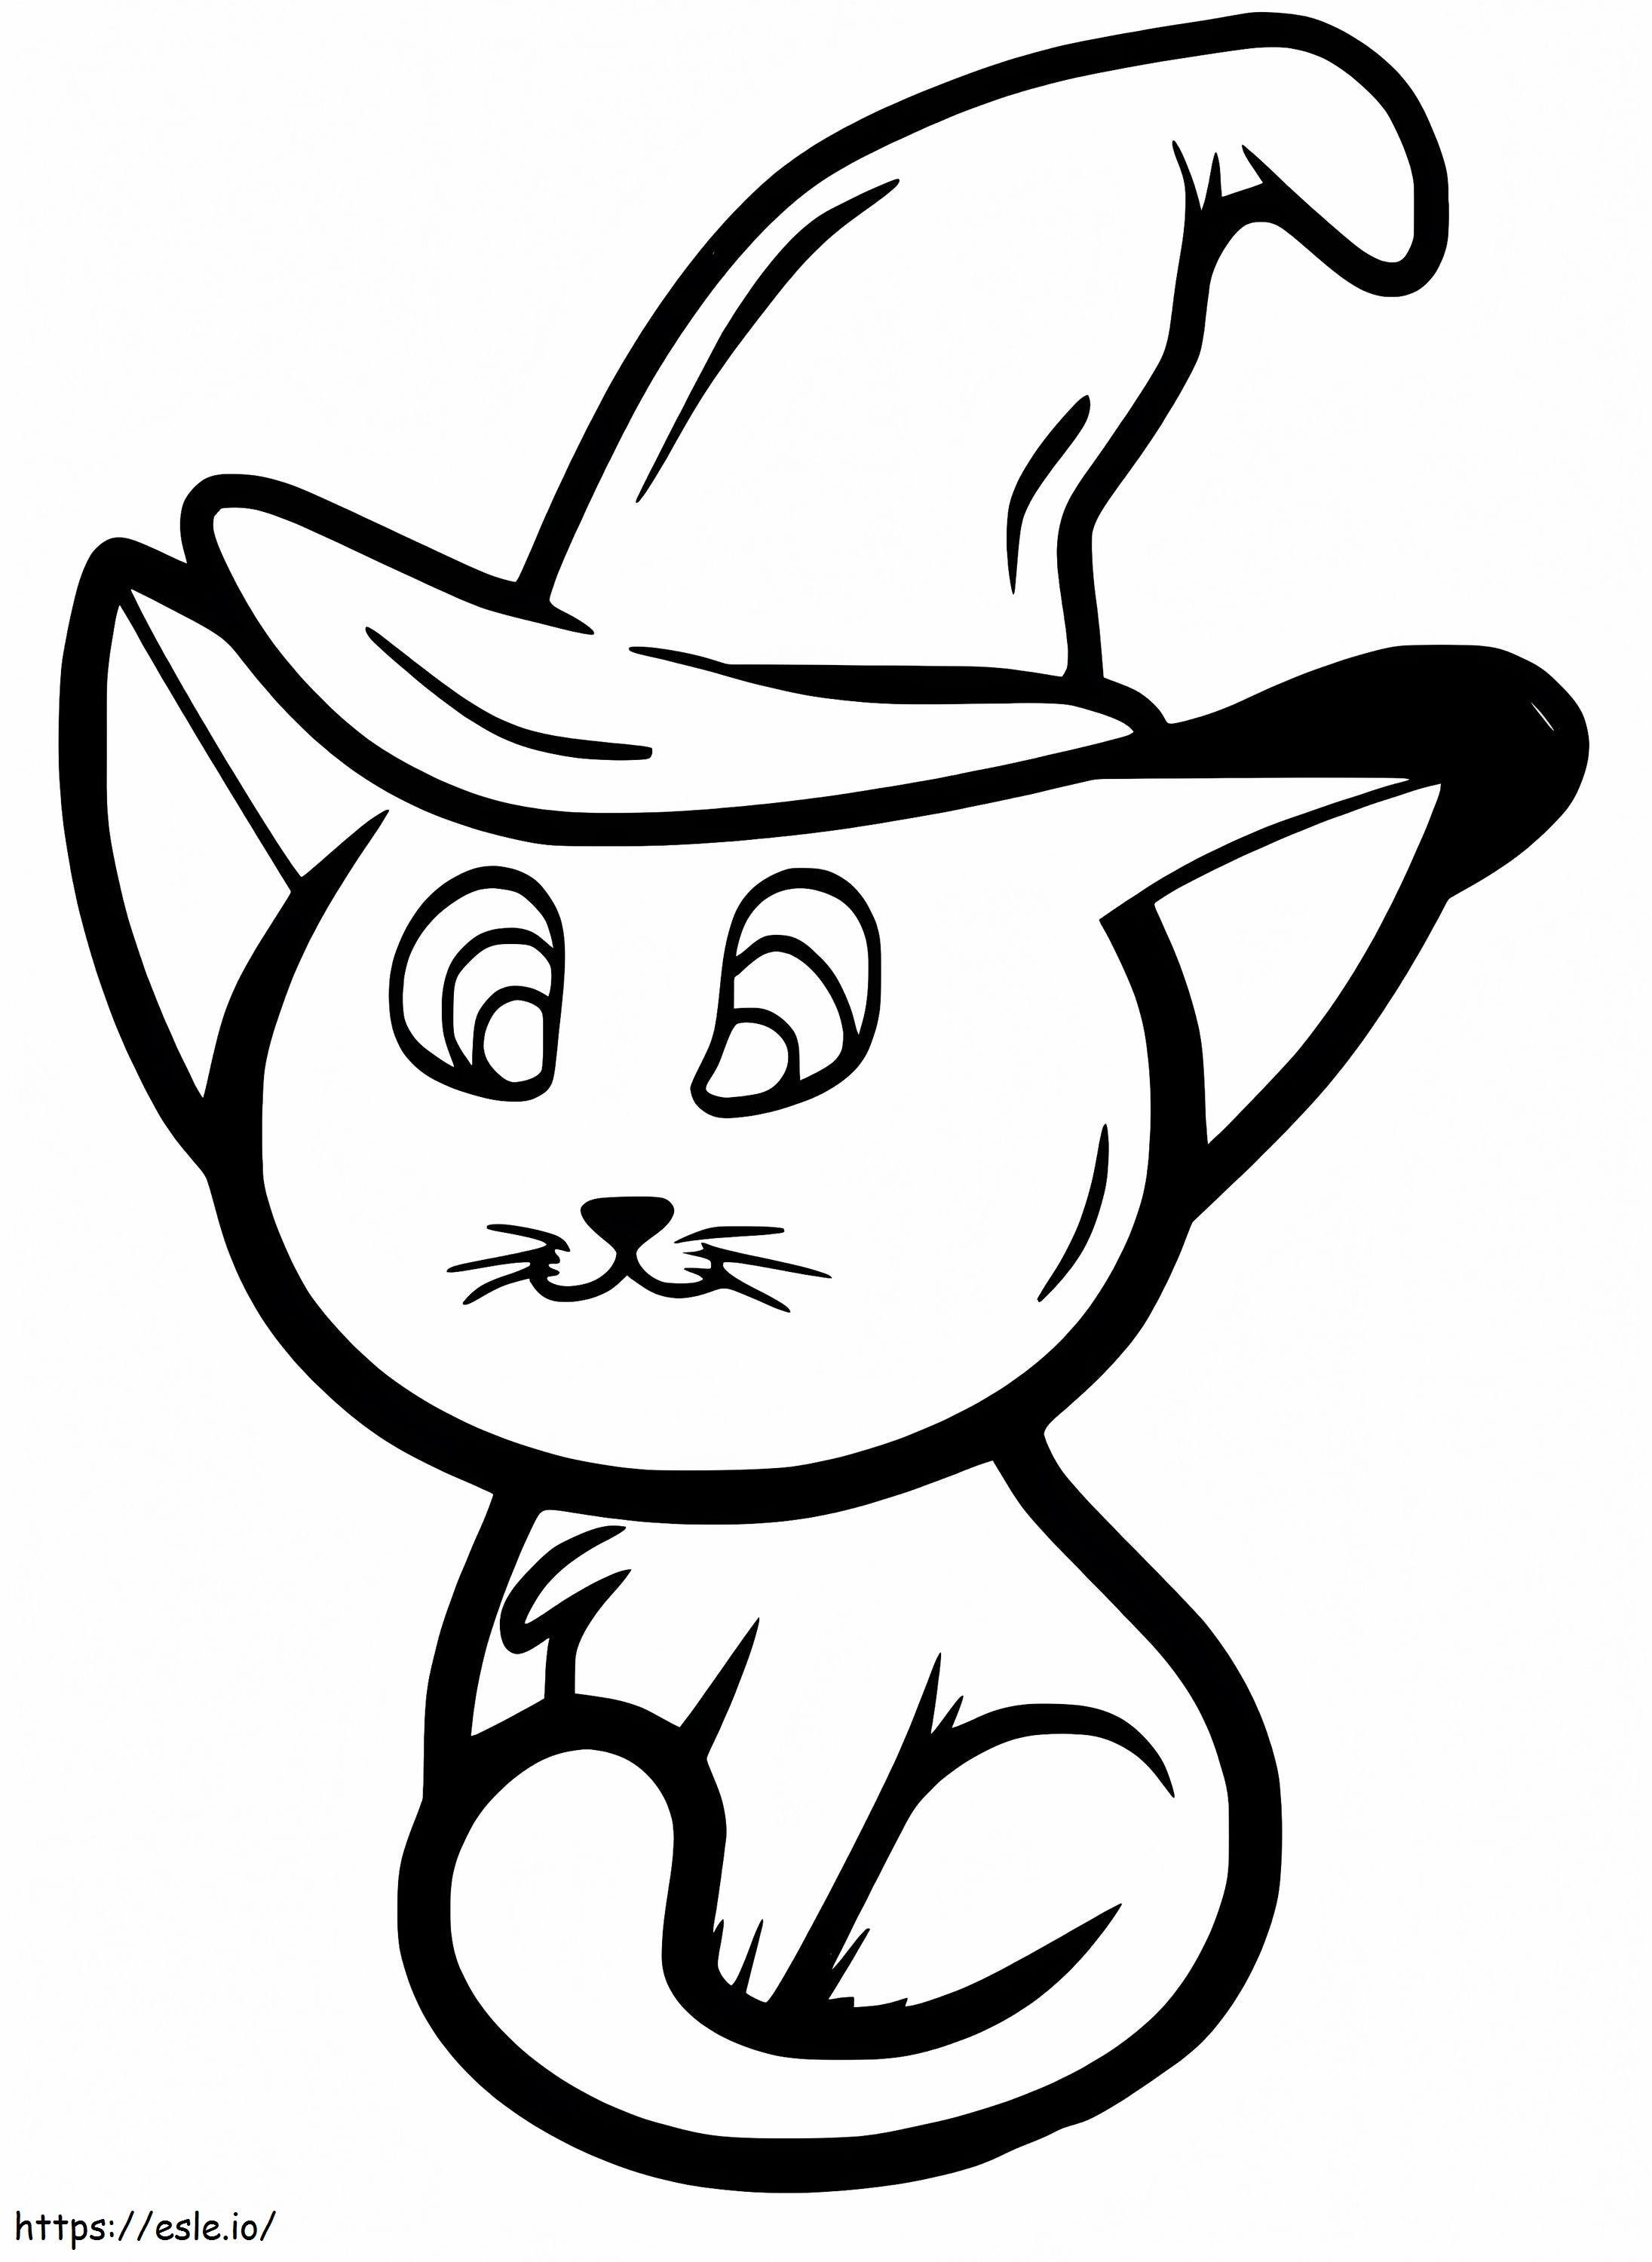 Gato com chapéu de bruxa para colorir